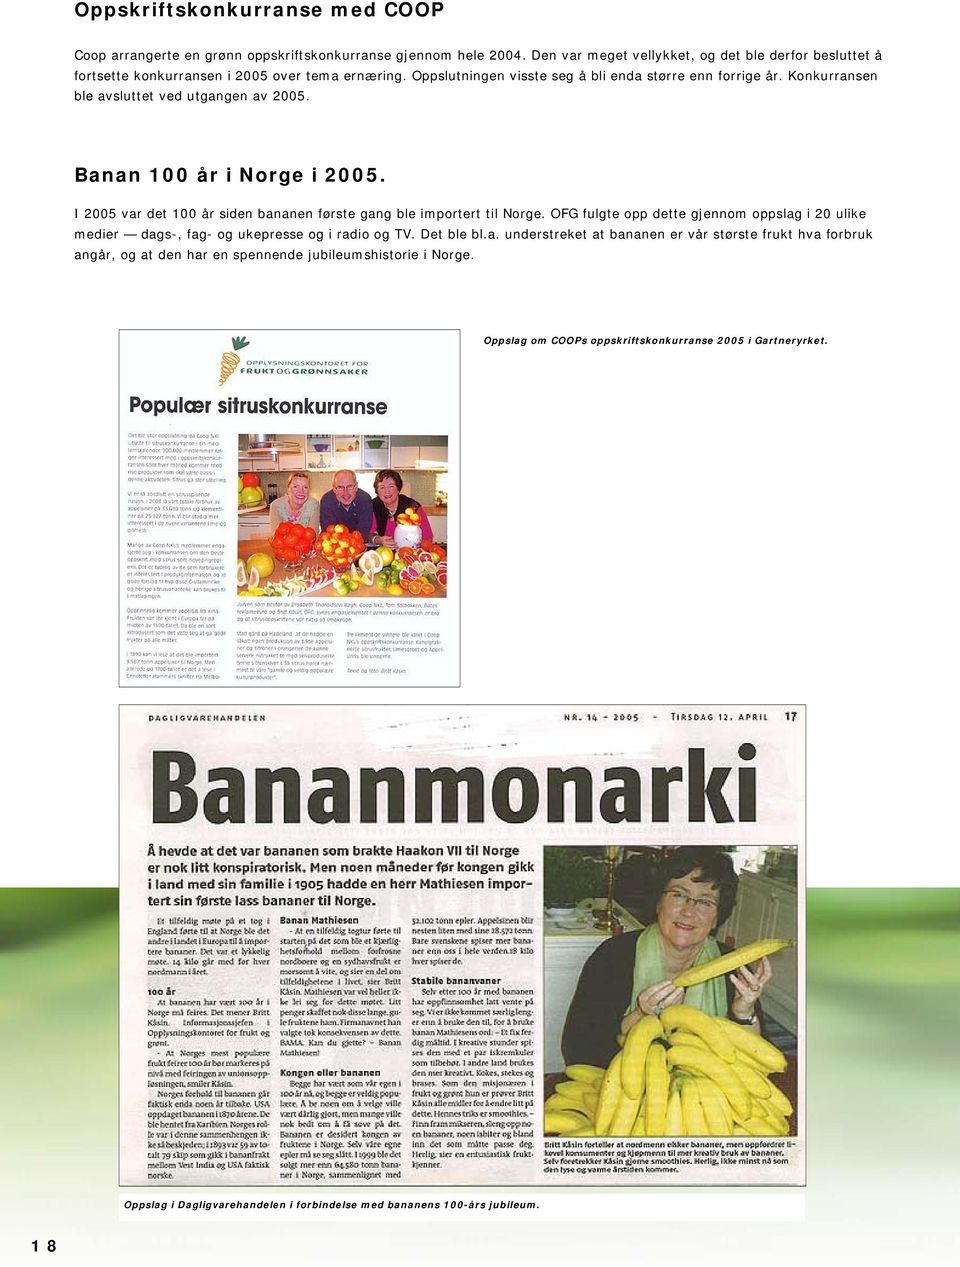 Konkurransen ble avsluttet ved utgangen av 2005. Banan 100 år i Norge i 2005. I 2005 var det 100 år siden bananen første gang ble importert til Norge.